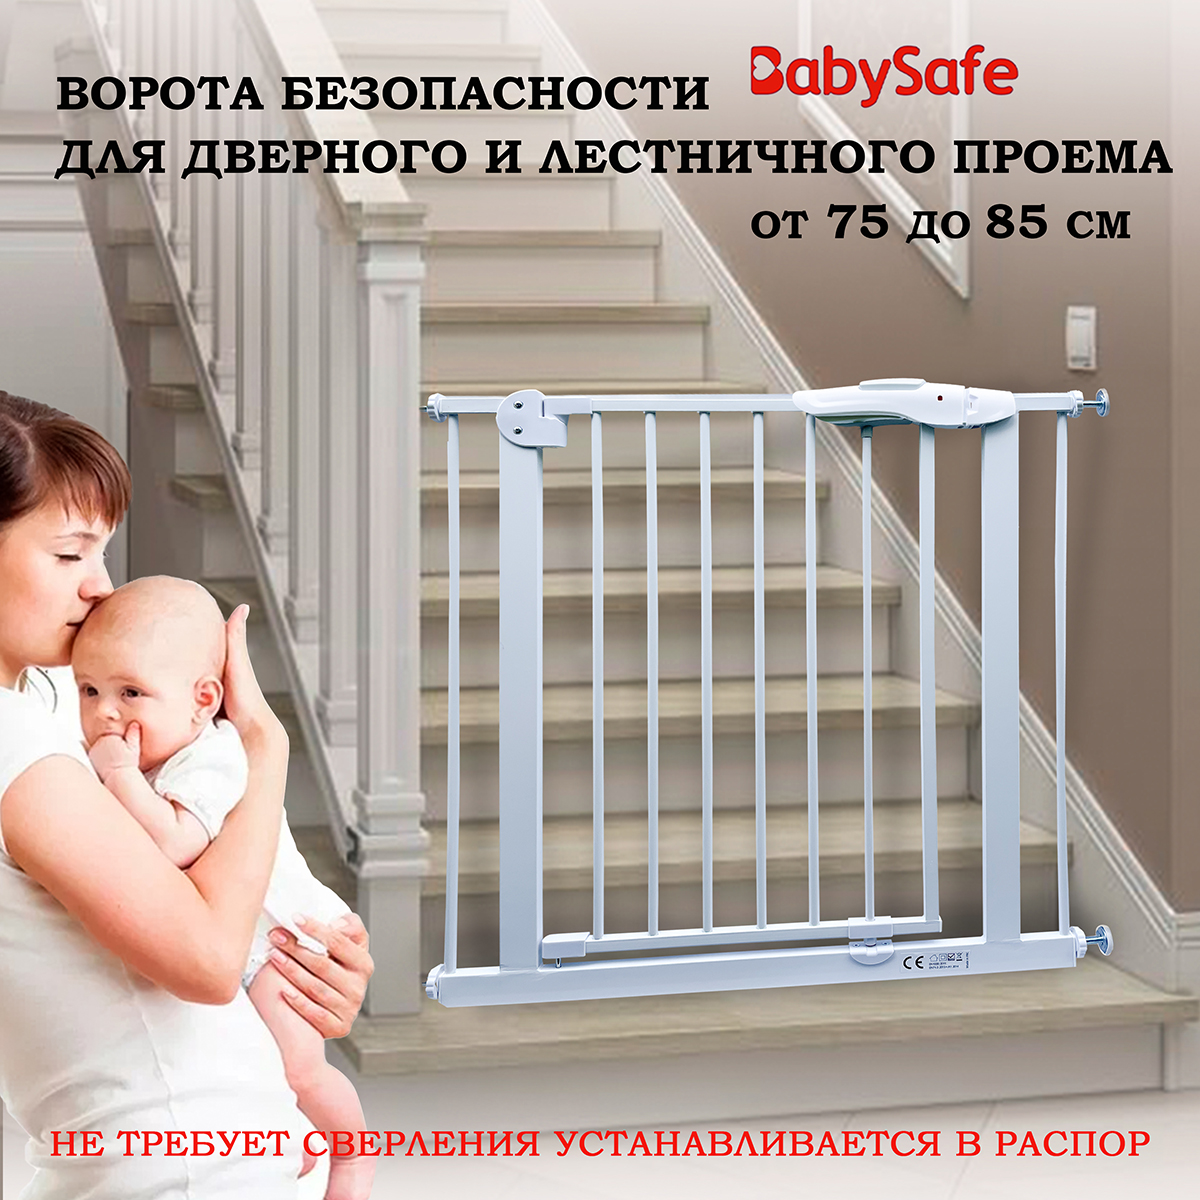 Барьер-калитка в дверной проем Baby Safe 75-85 cm XY-009 - фото 1